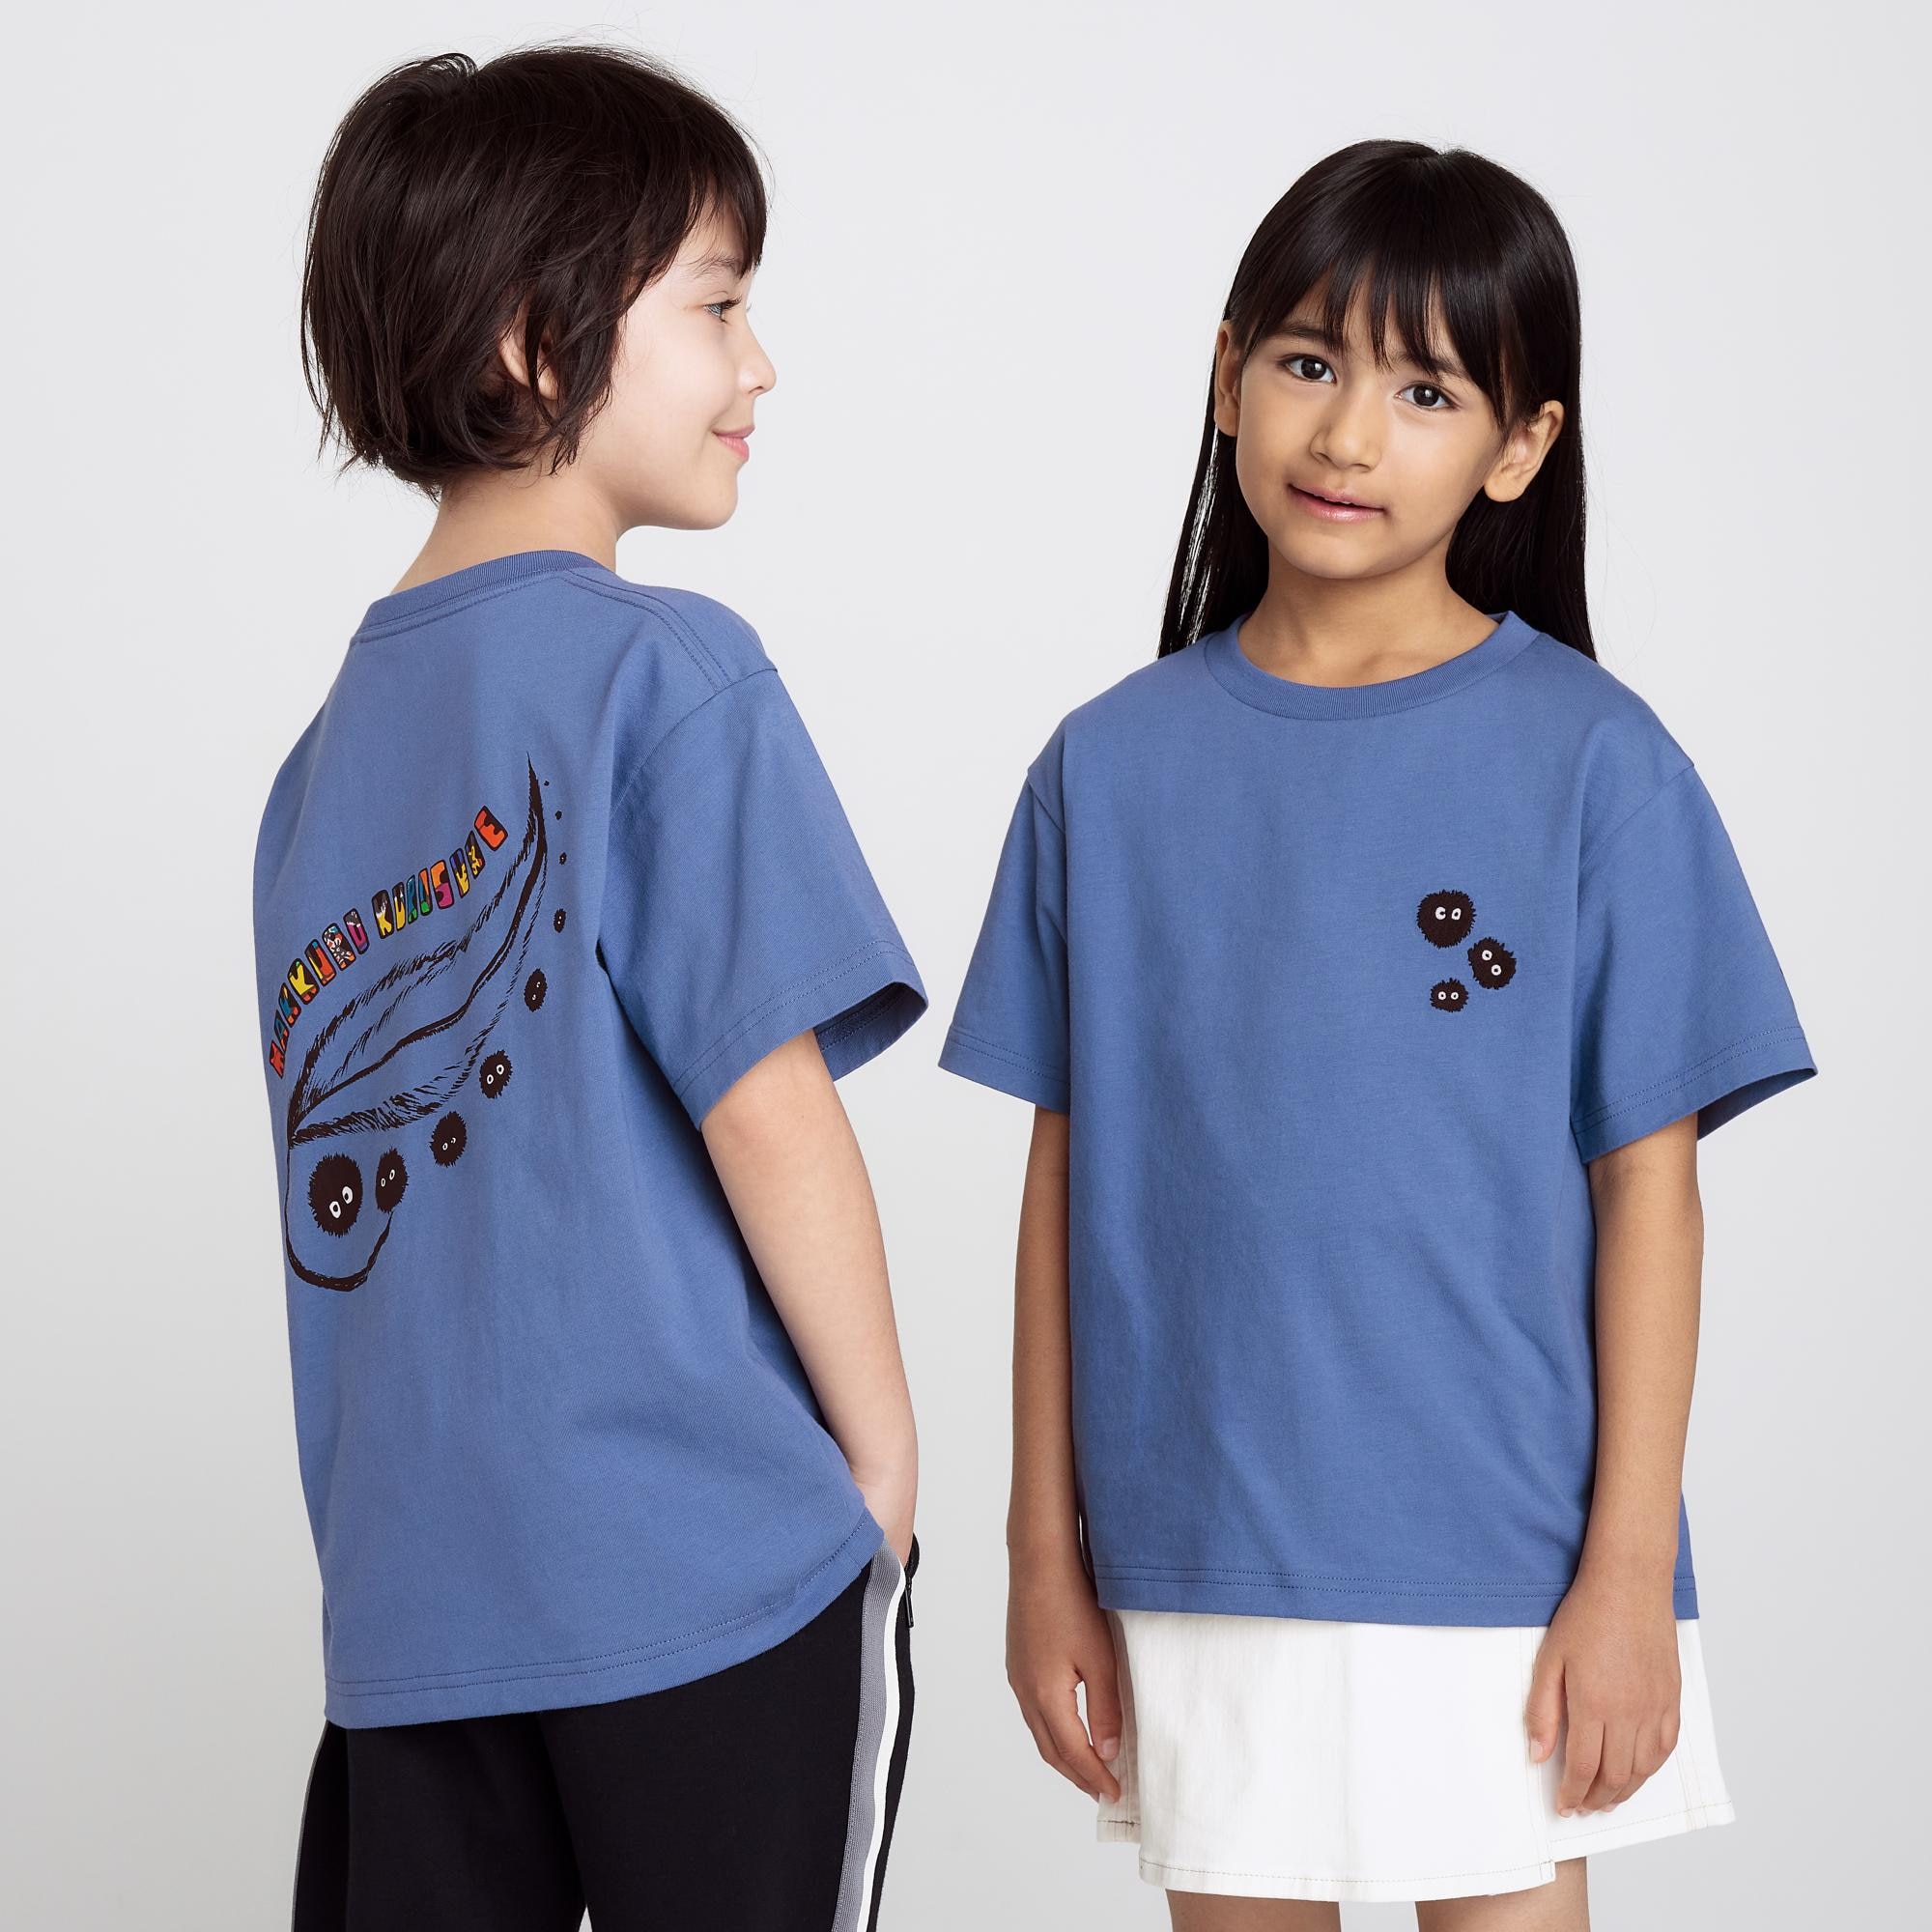 Футболка UNIQLO Kids Studio Ghibli Ut с коротким рукавом и рисунком, синий